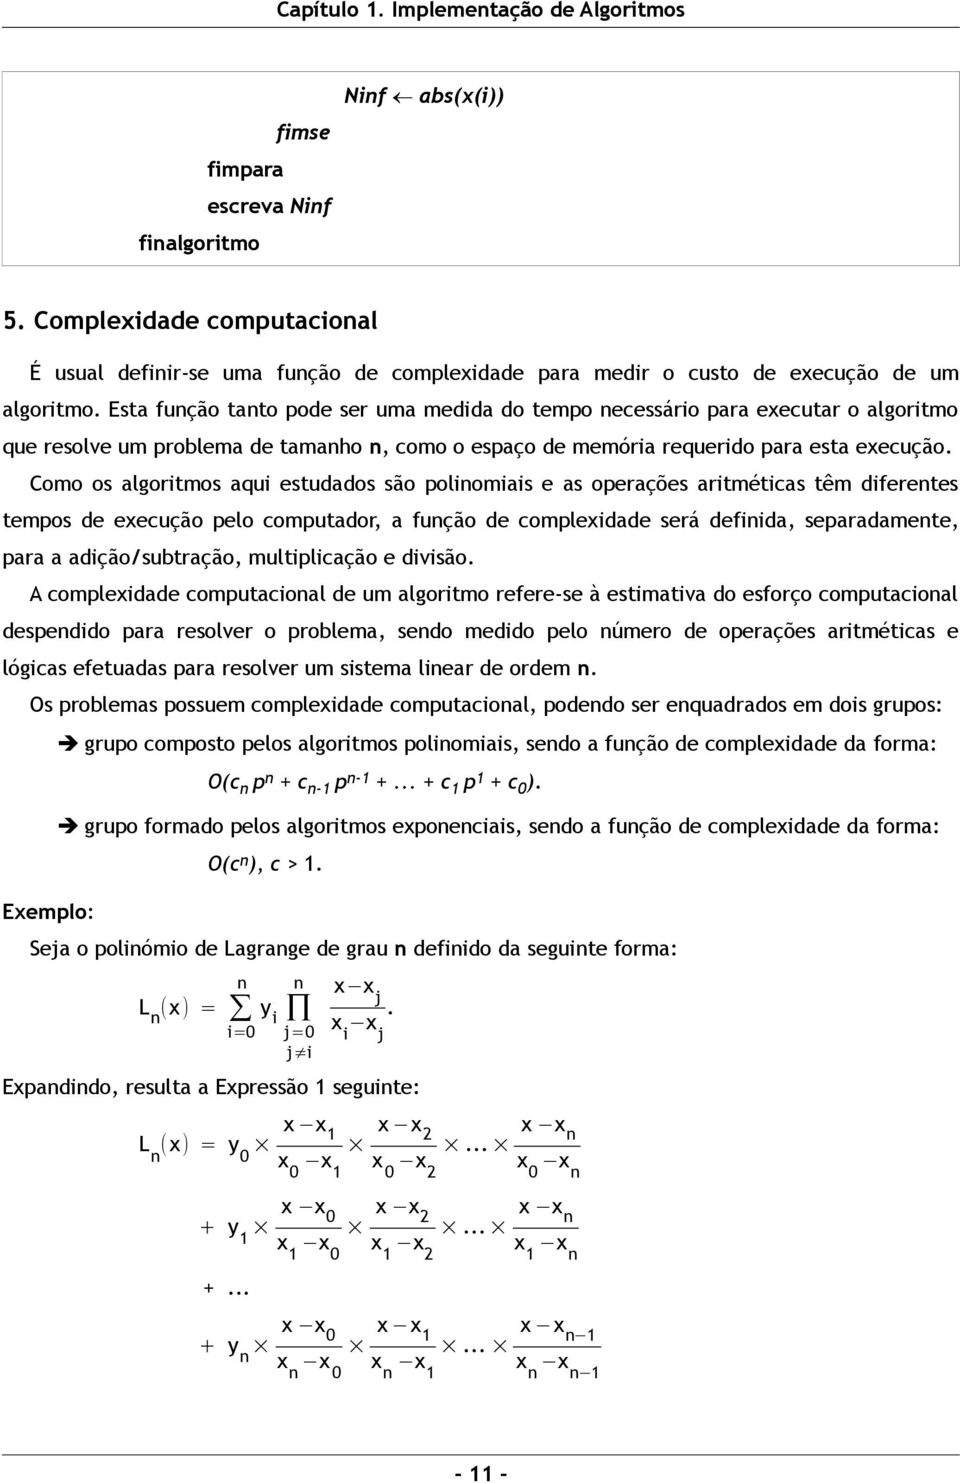 Como os algoritmos aqui estudados são polinomiais e as operações aritméticas têm diferentes tempos de execução pelo computador, a função de complexidade será definida, separadamente, para a